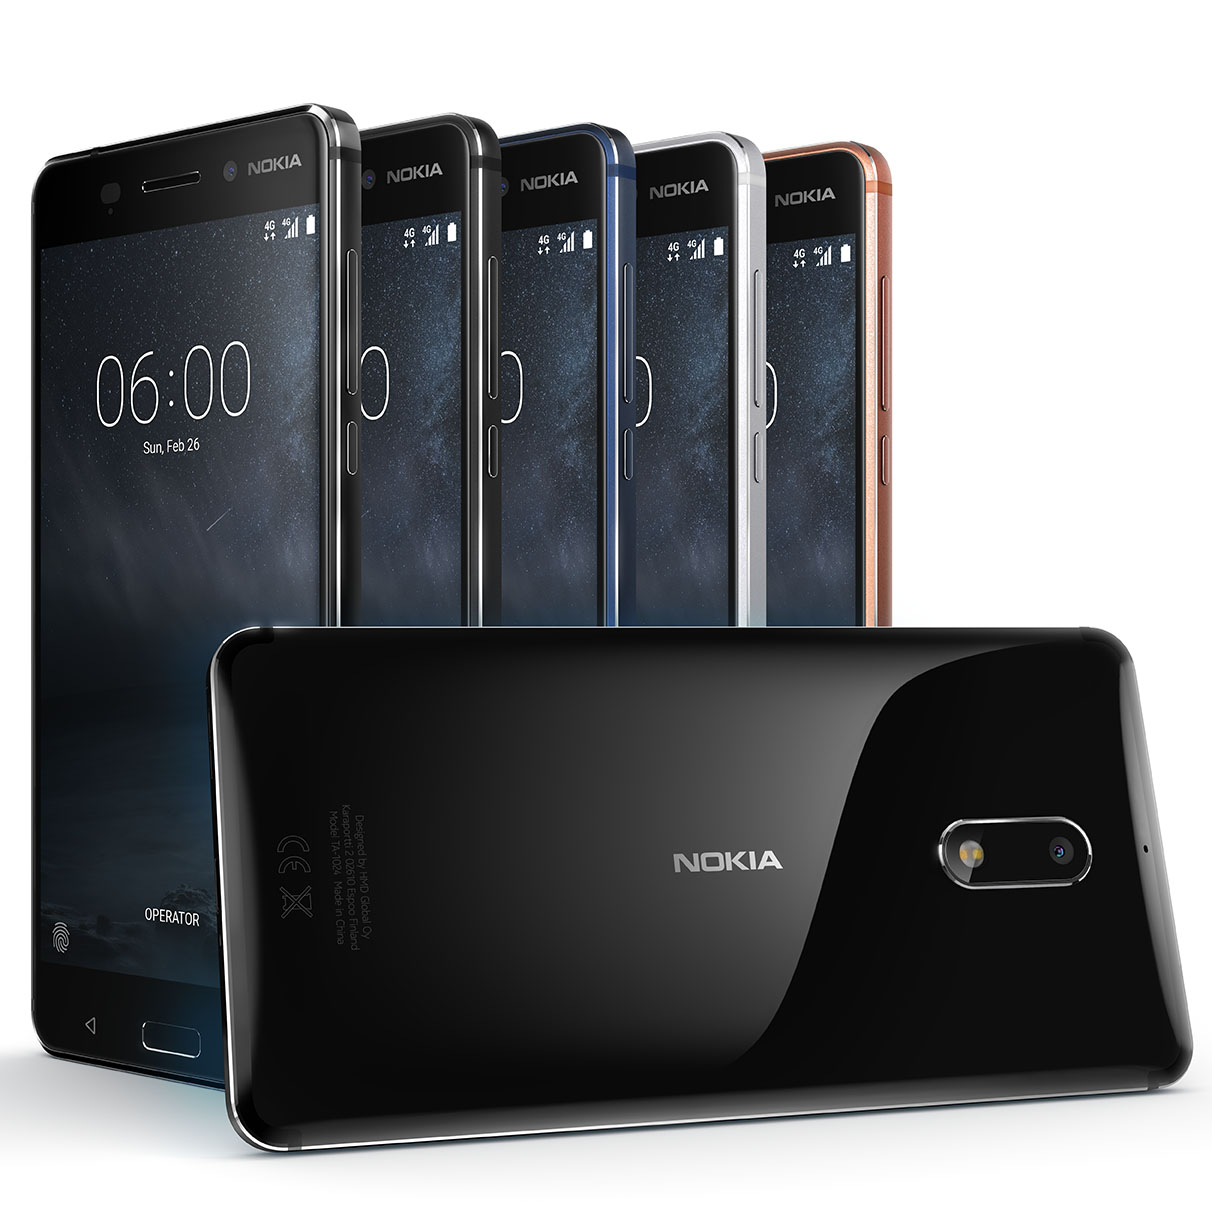 Nokia 6 range